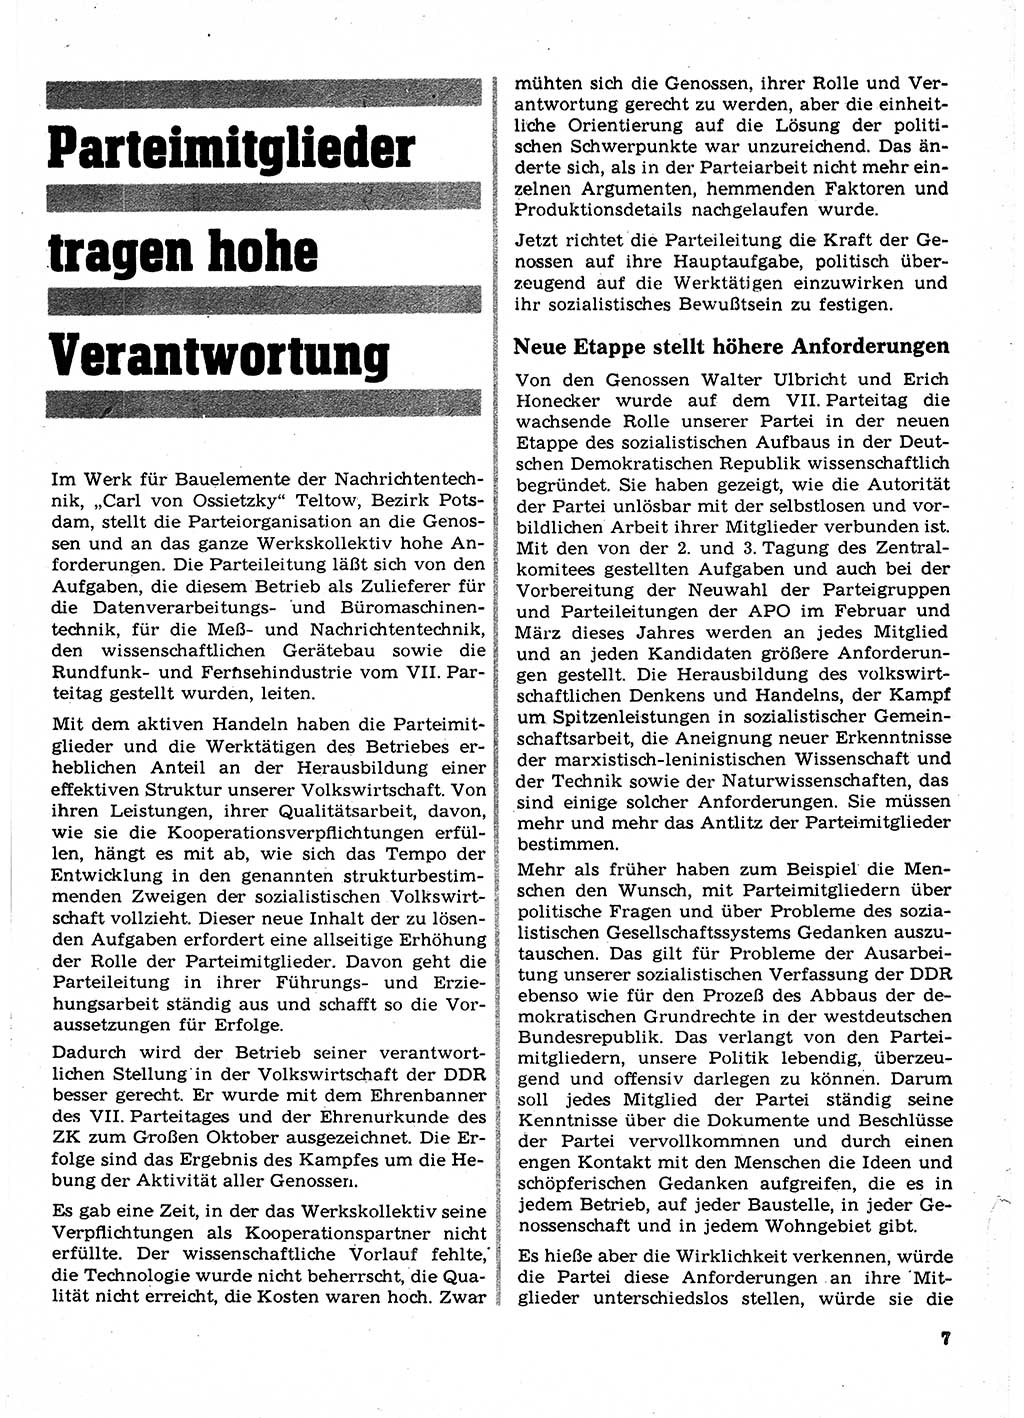 Neuer Weg (NW), Organ des Zentralkomitees (ZK) der SED (Sozialistische Einheitspartei Deutschlands) für Fragen des Parteilebens, 23. Jahrgang [Deutsche Demokratische Republik (DDR)] 1968, Seite 7 (NW ZK SED DDR 1968, S. 7)